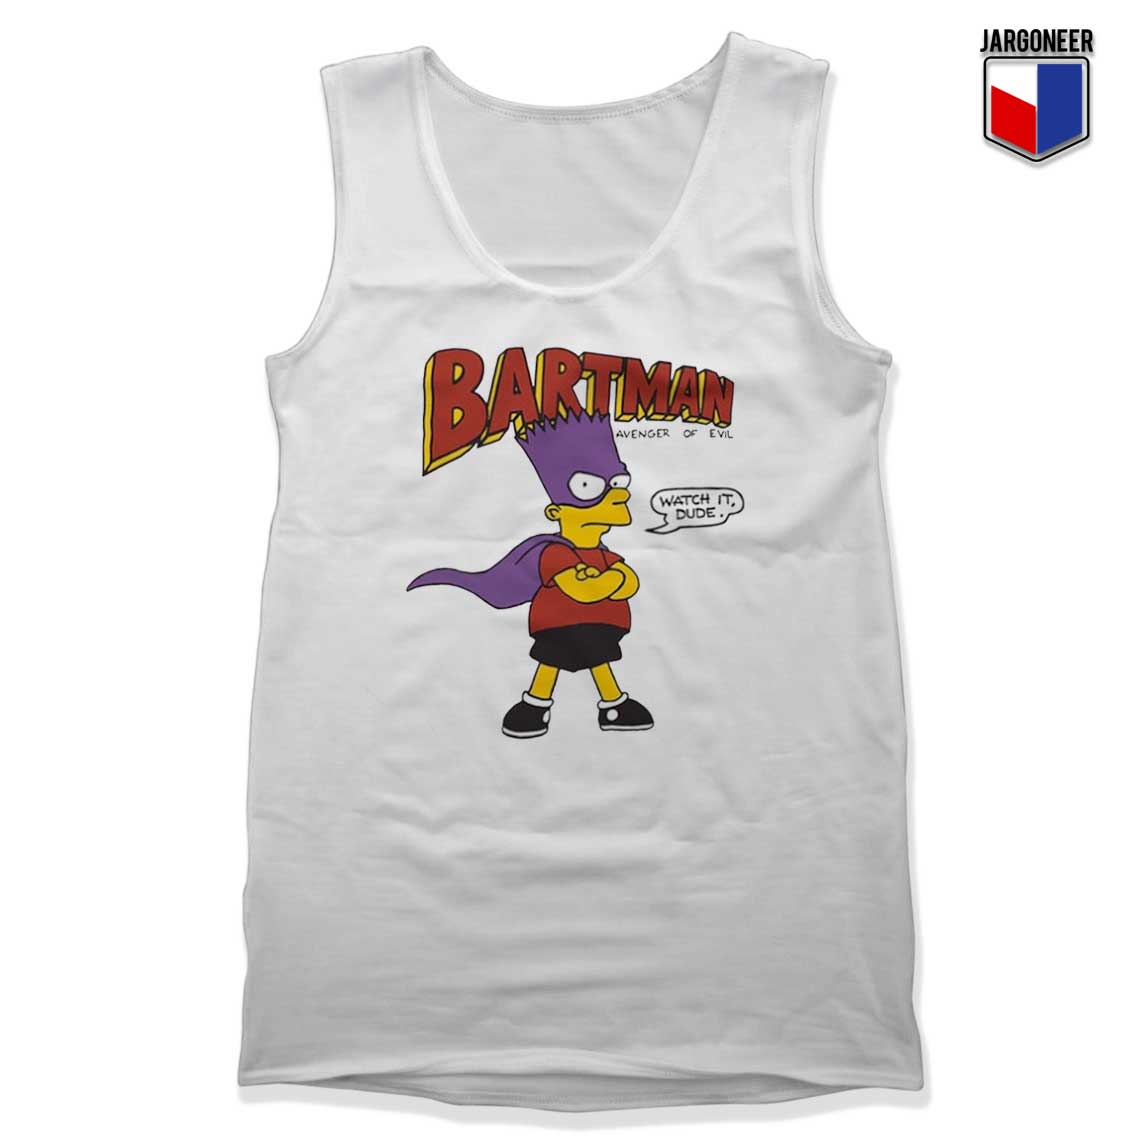 Bartman Avenger of Evil Tank Top - Shop Unique Graphic Cool Shirt Designs